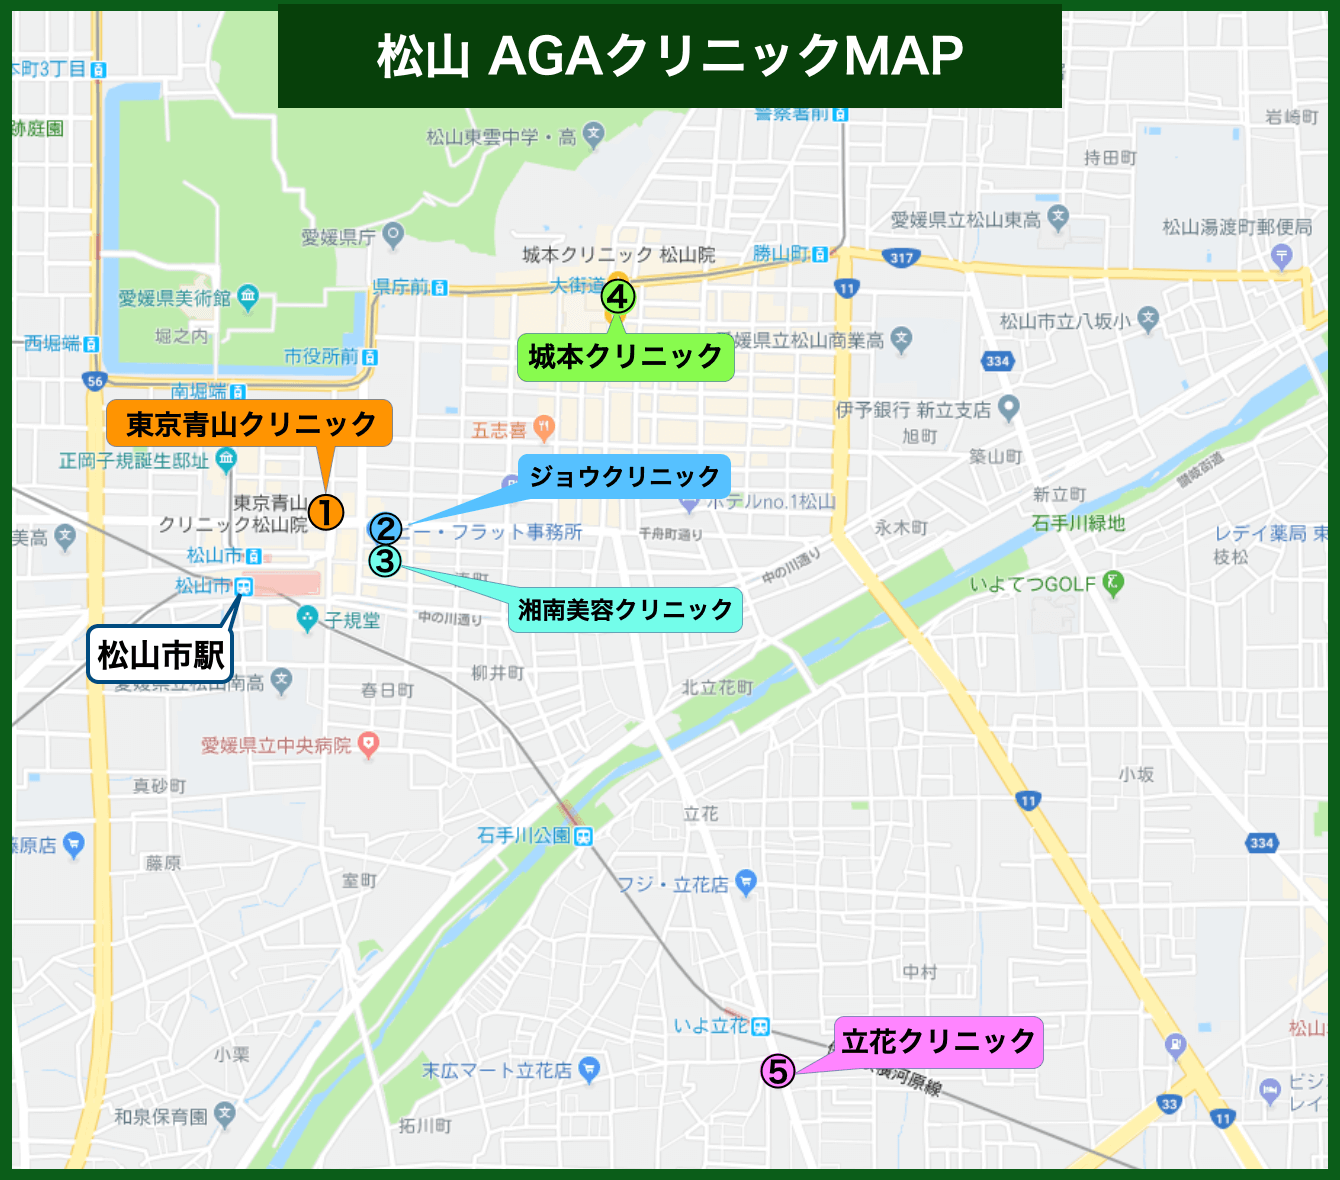 松山 AGAクリニックMAP